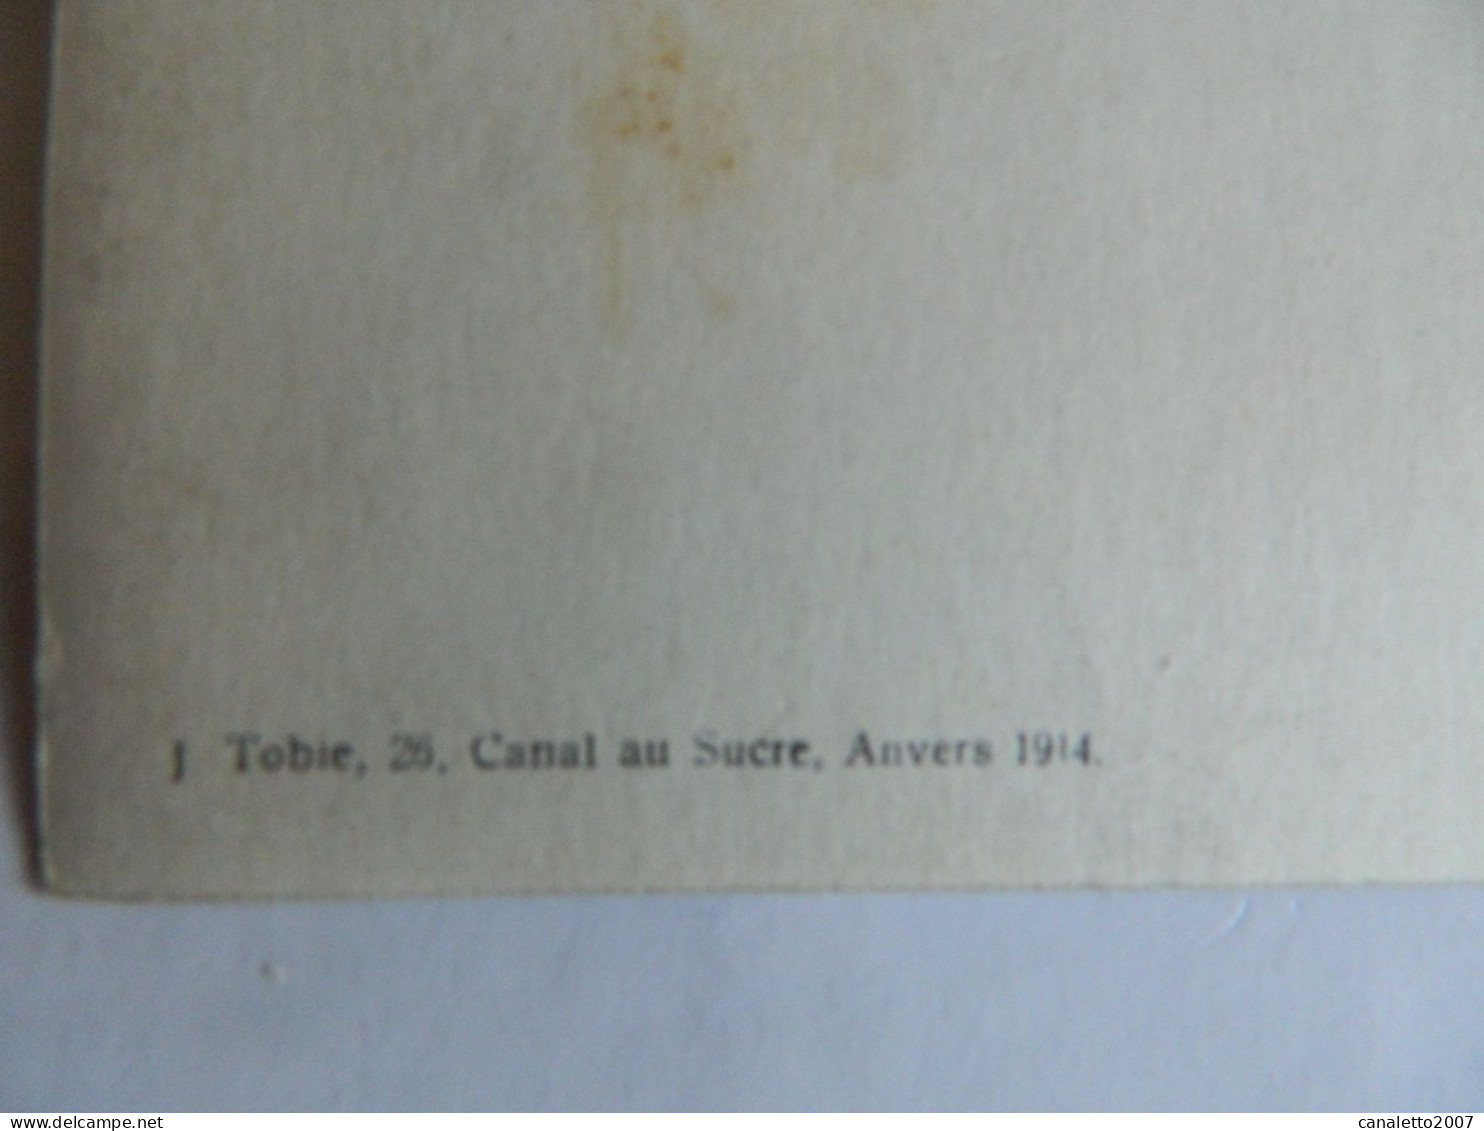 MILITARIA+ANVERS:PHOTO CARTE DE MILITAIRE EN 1913 FAIT PAR J.TOBIE 26 CANAL AU SUCRE ANVERS - Personajes